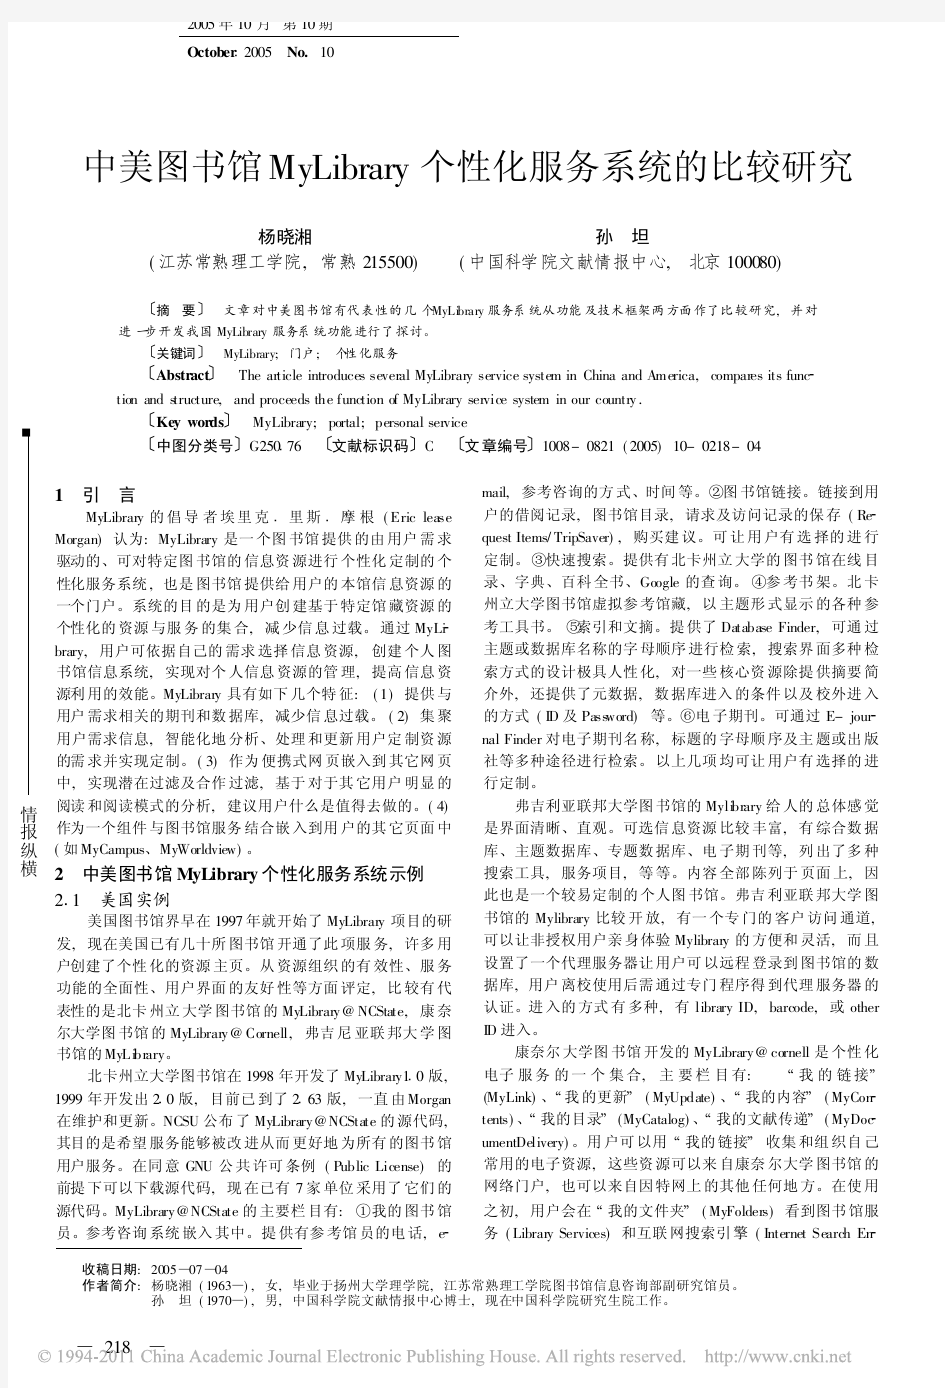 中美图书馆MyLibrary个性化服务系统的比较研究